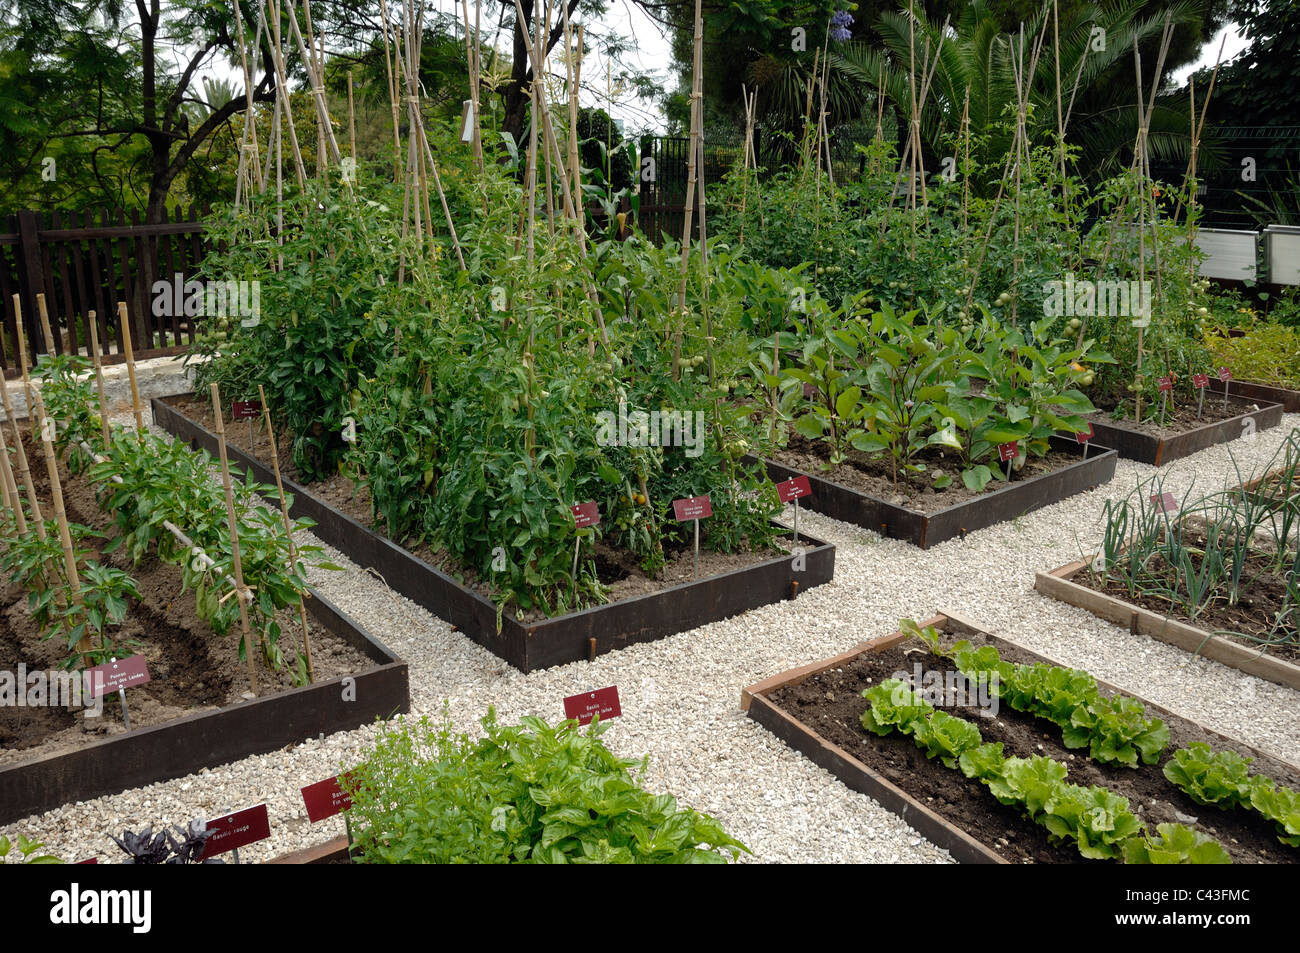 Gemüsegarten, Gemüsegarten oder Gemüsegarten mit Tomaten Pflanzen & Salate wachsen in Parterres und Zeilen Stockfoto